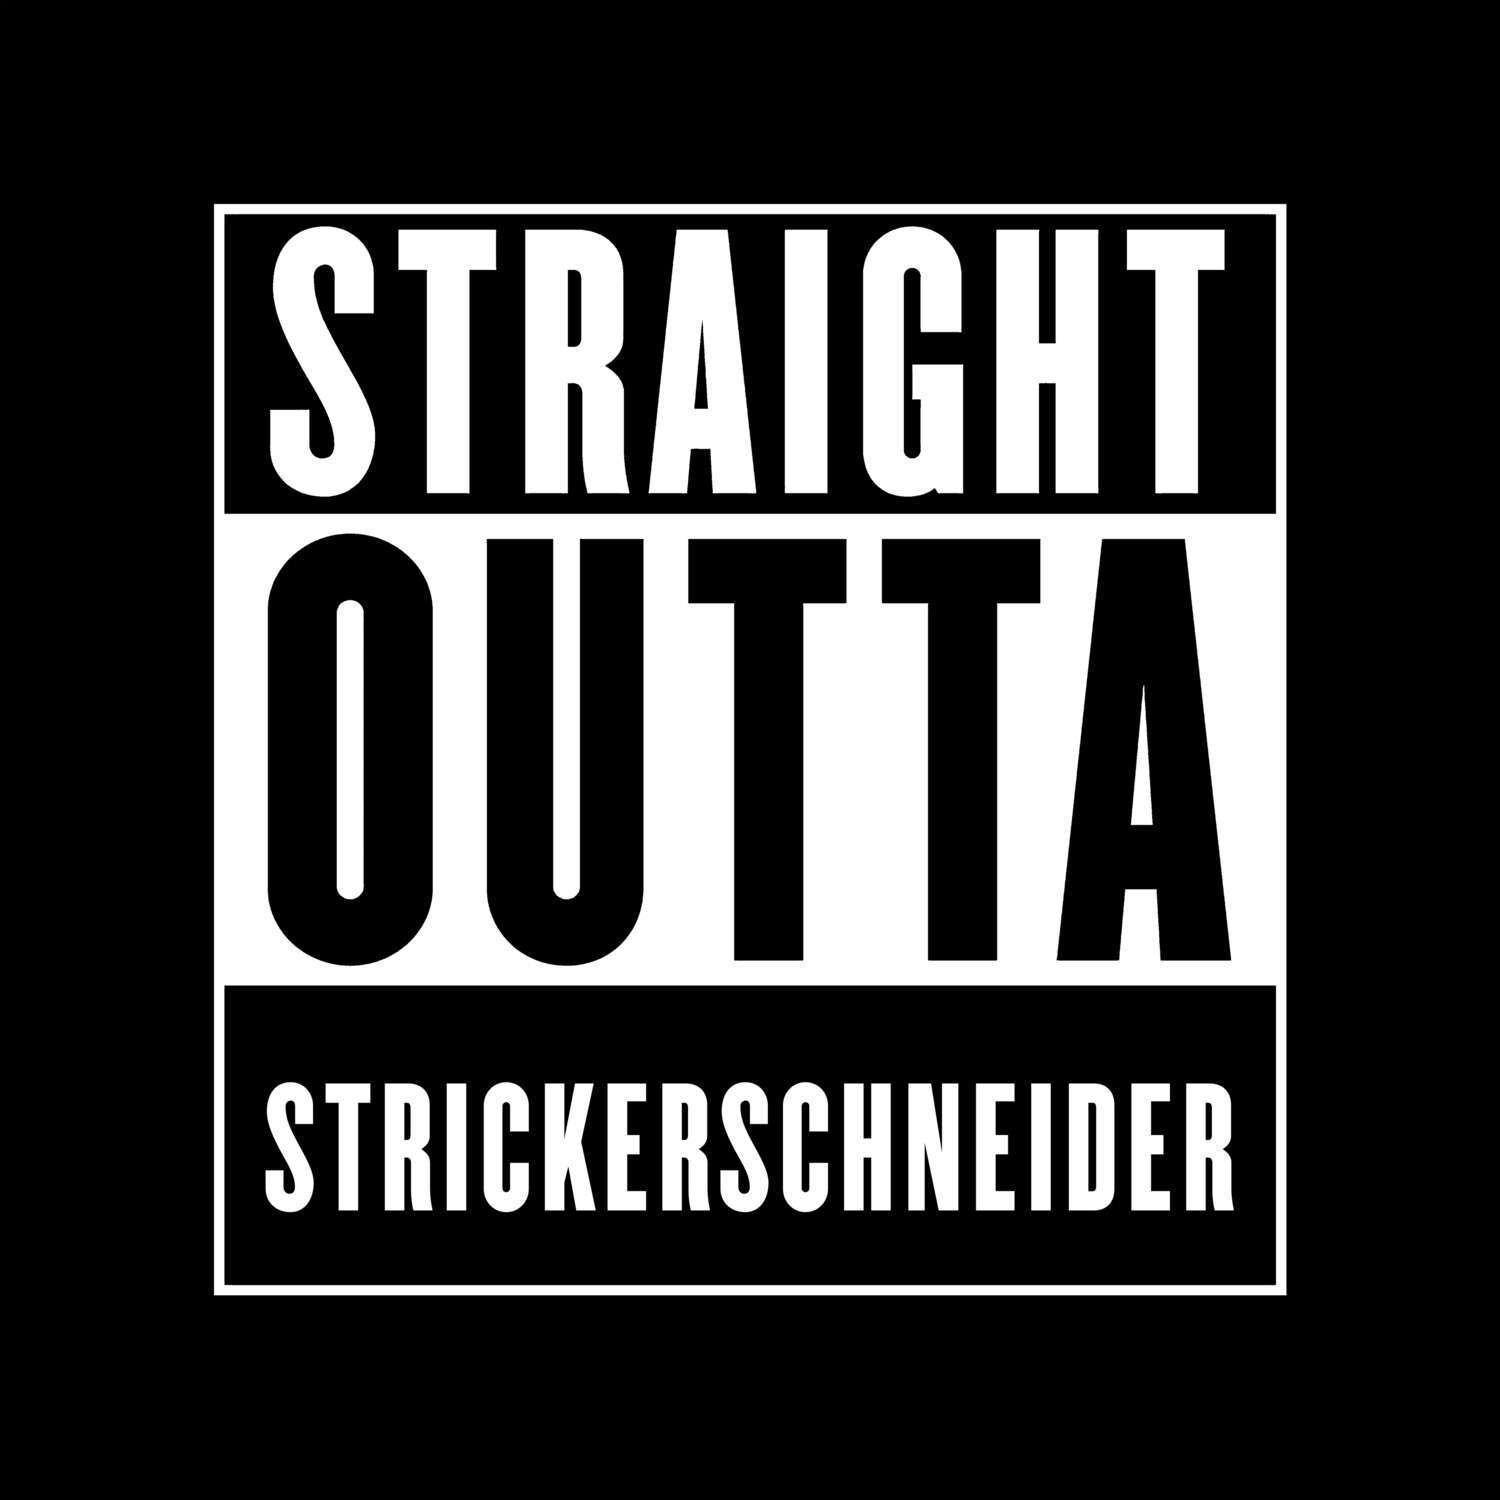 Strickerschneider T-Shirt »Straight Outta«